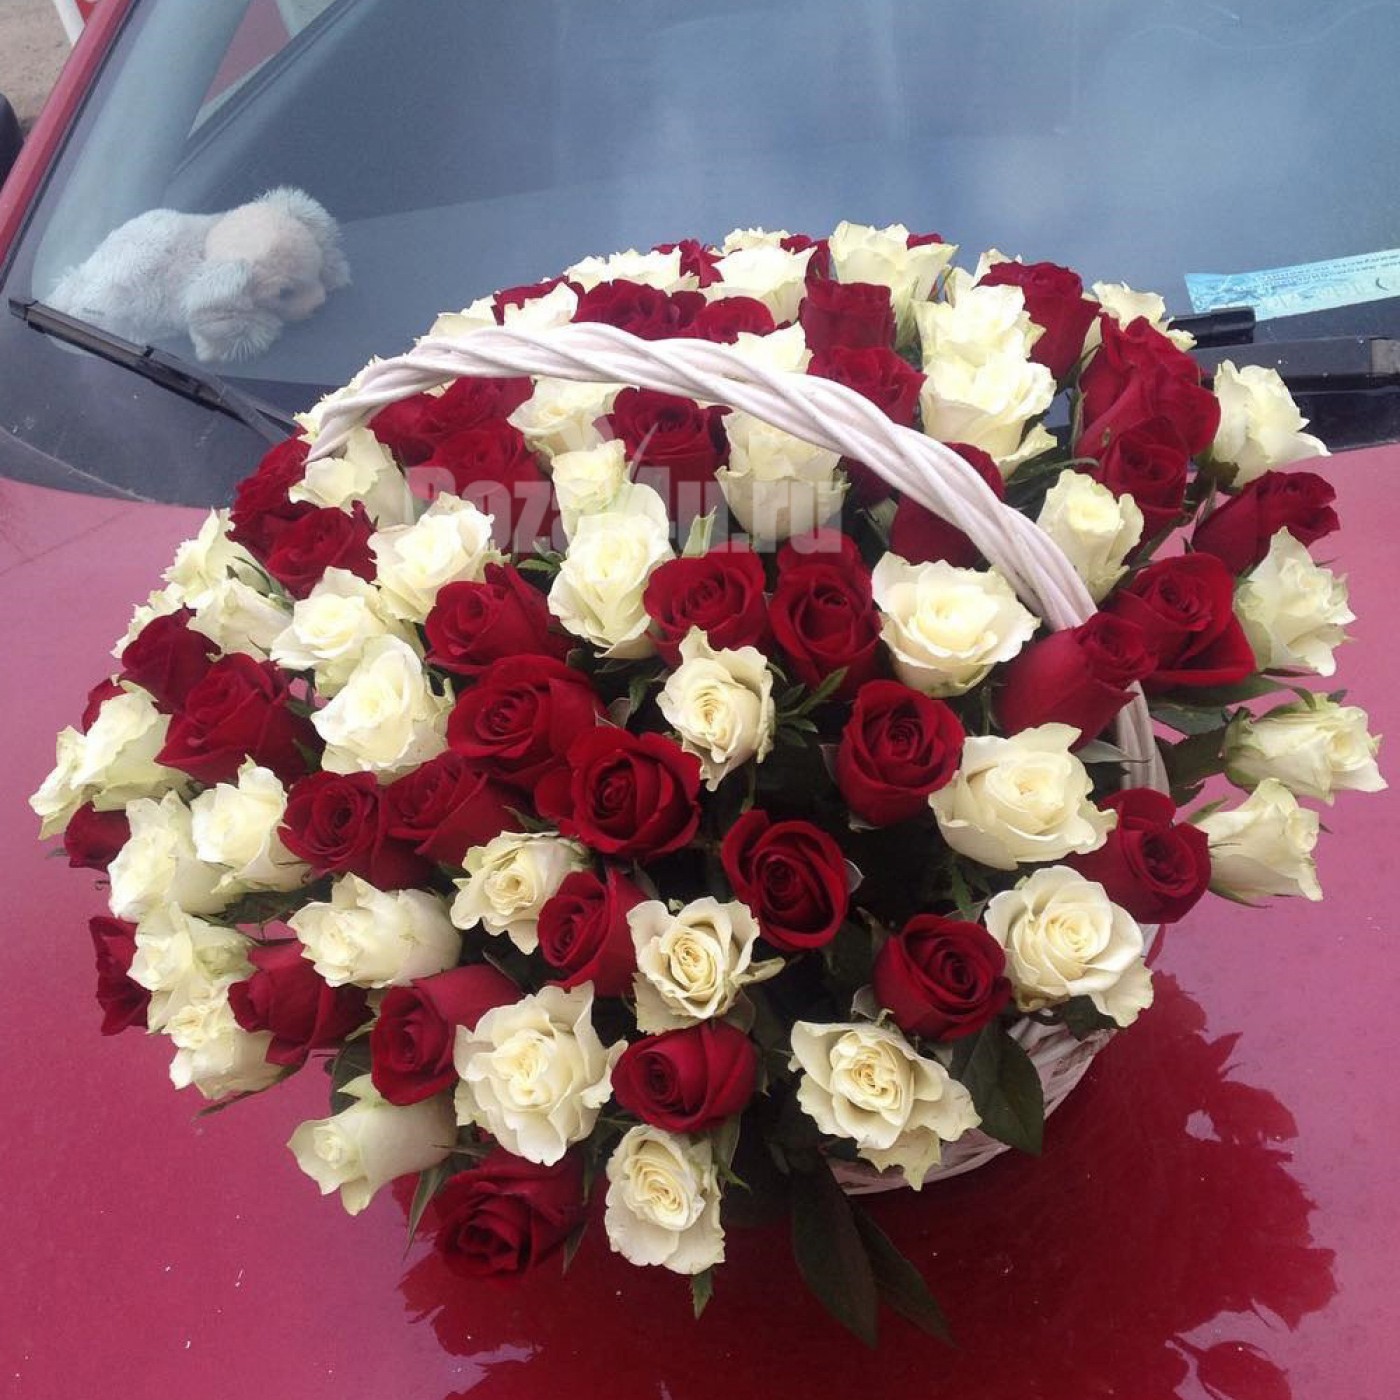 Купить букет до 10000 руб из красных и белых роз на свадьбу с доставкой по Москве и области